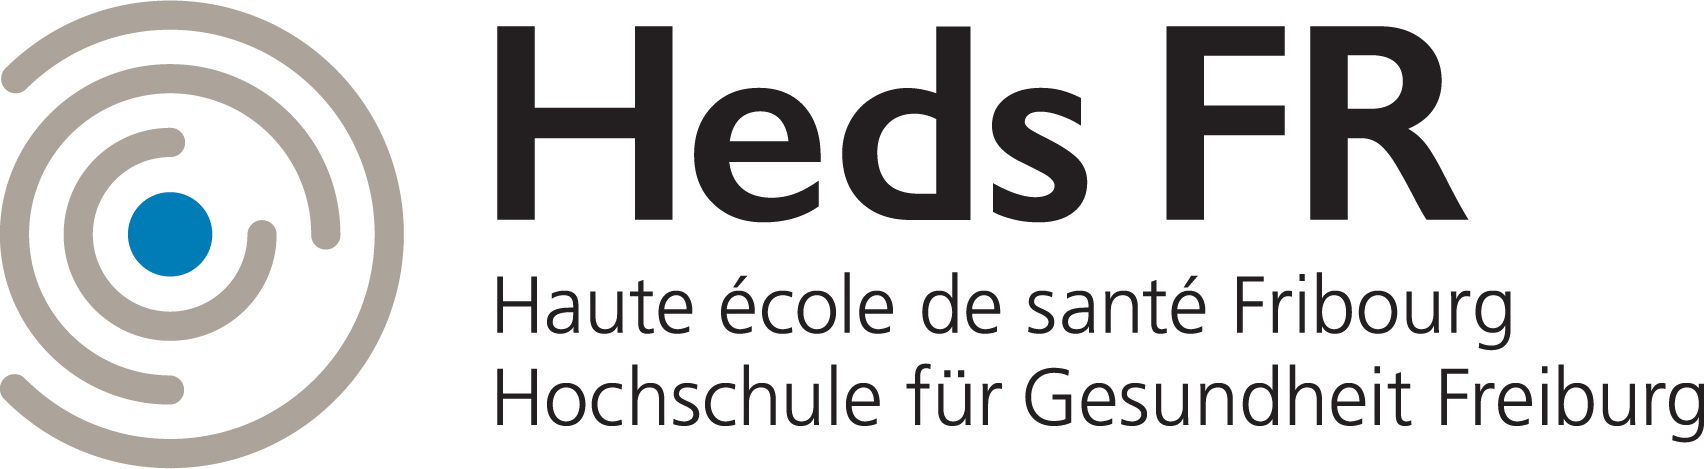 Logo de la HEdS-FR